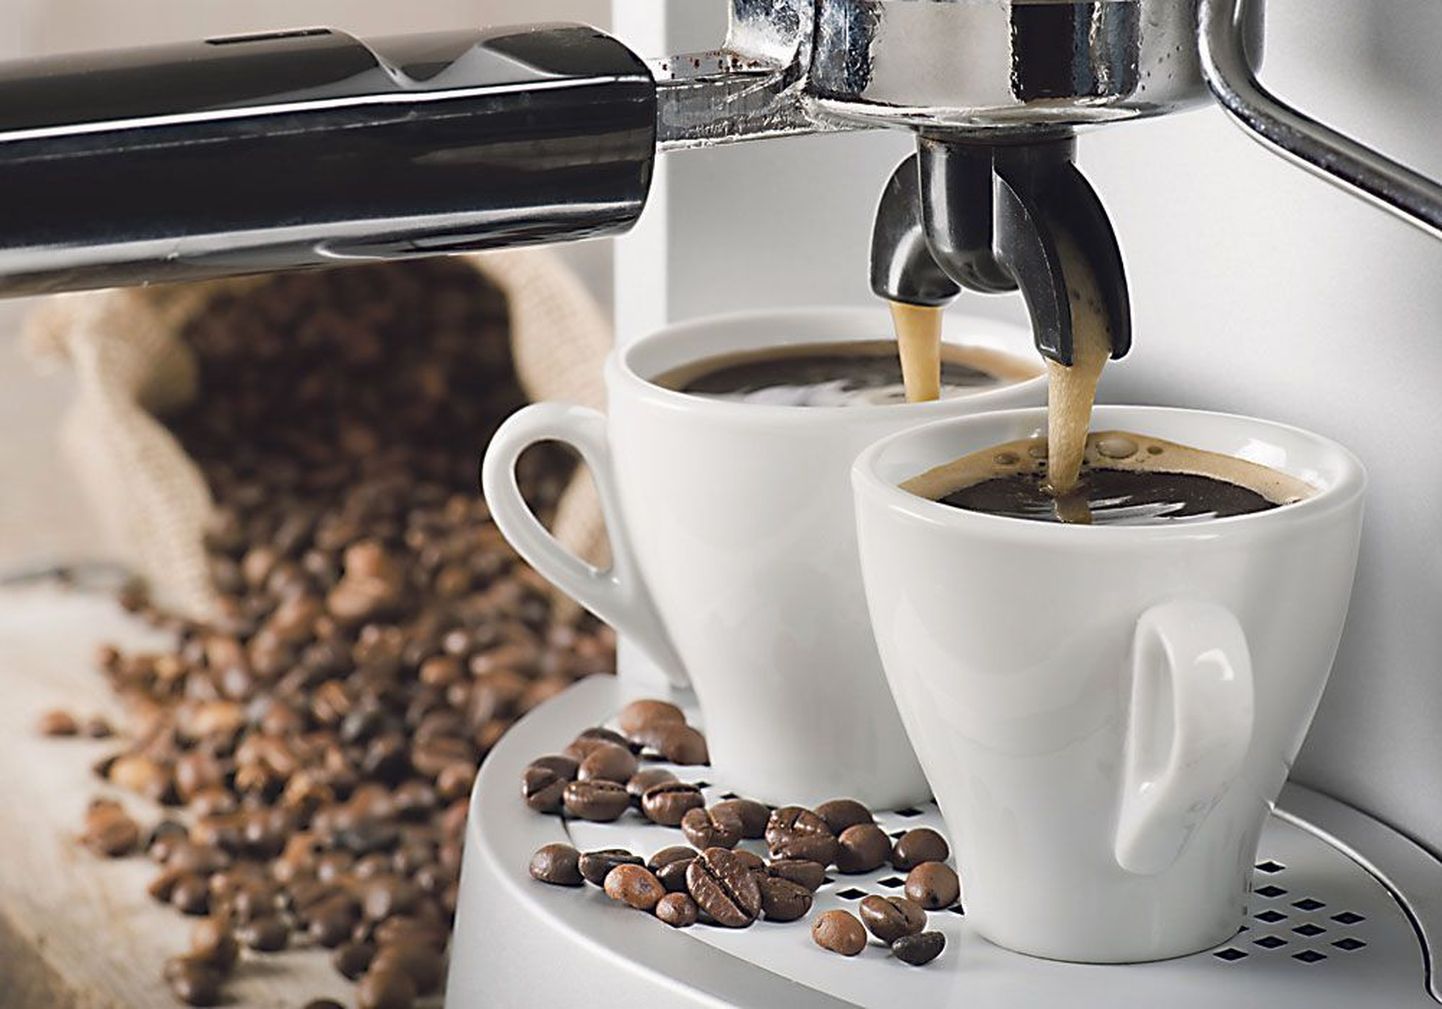 Кофеварка станет незаменимым прибором в доме настоящего ценителя кофе.